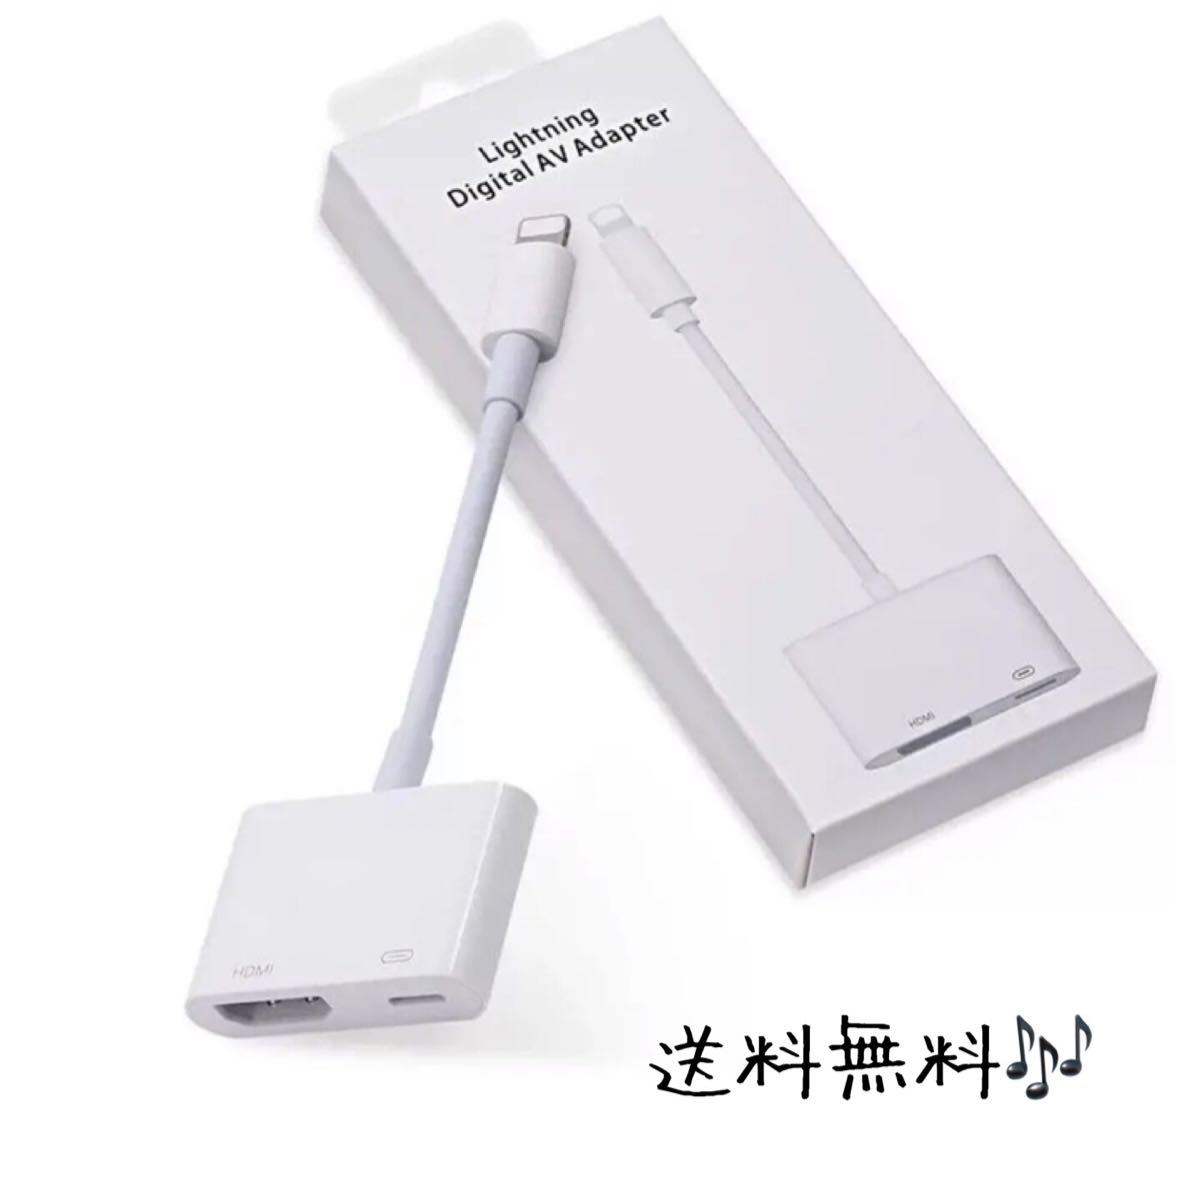 【新品送料無料】iPhone iPad HDMI 変換ケーブル ミラーリング